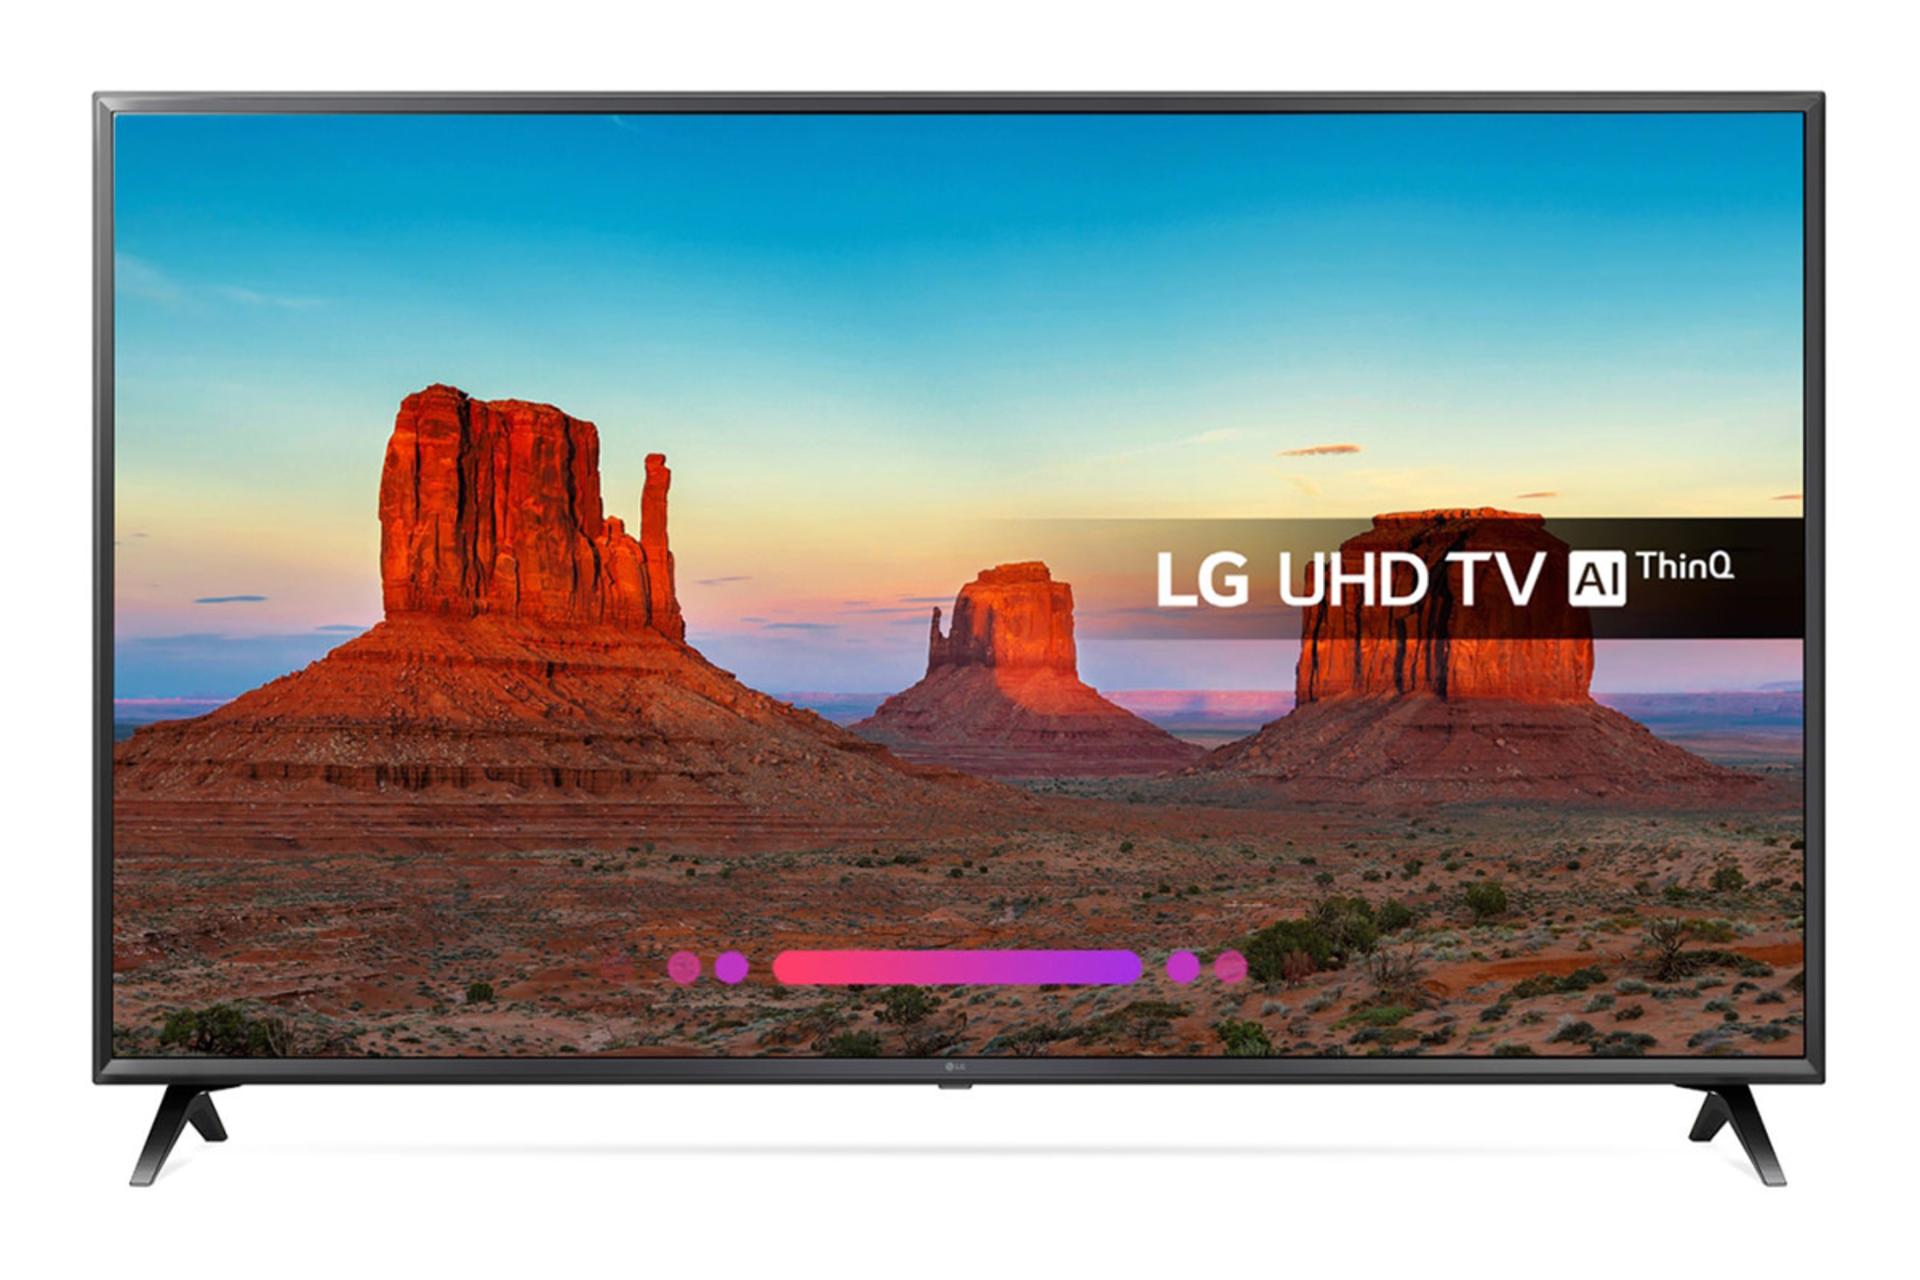 نمای جلو تلویزیون ال جی UK6300 مدل 55 اینچ، صفحه روشن، رنگ مشکی و نمایش Ai Thinq